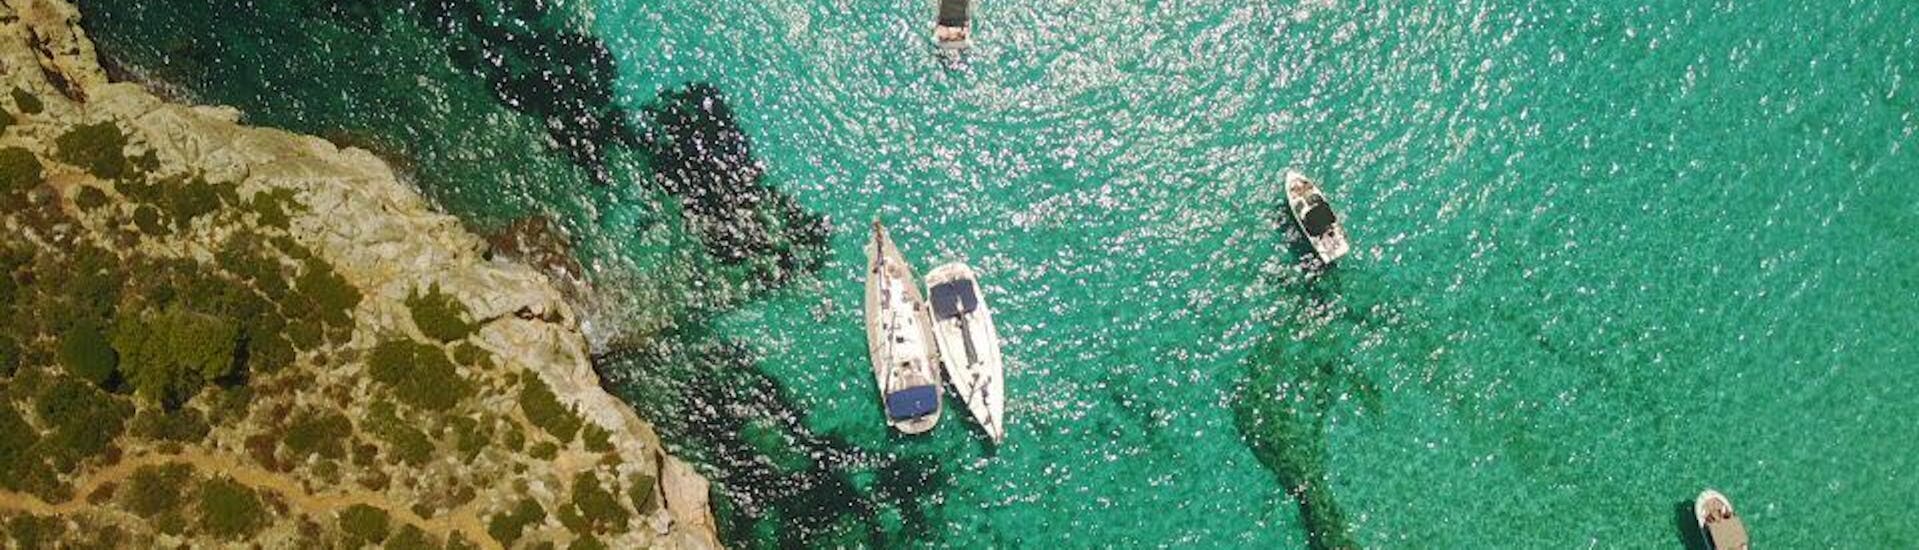 Zeilboottocht van Portocolom naar Cala Varques met zwemmen & toeristische attracties.